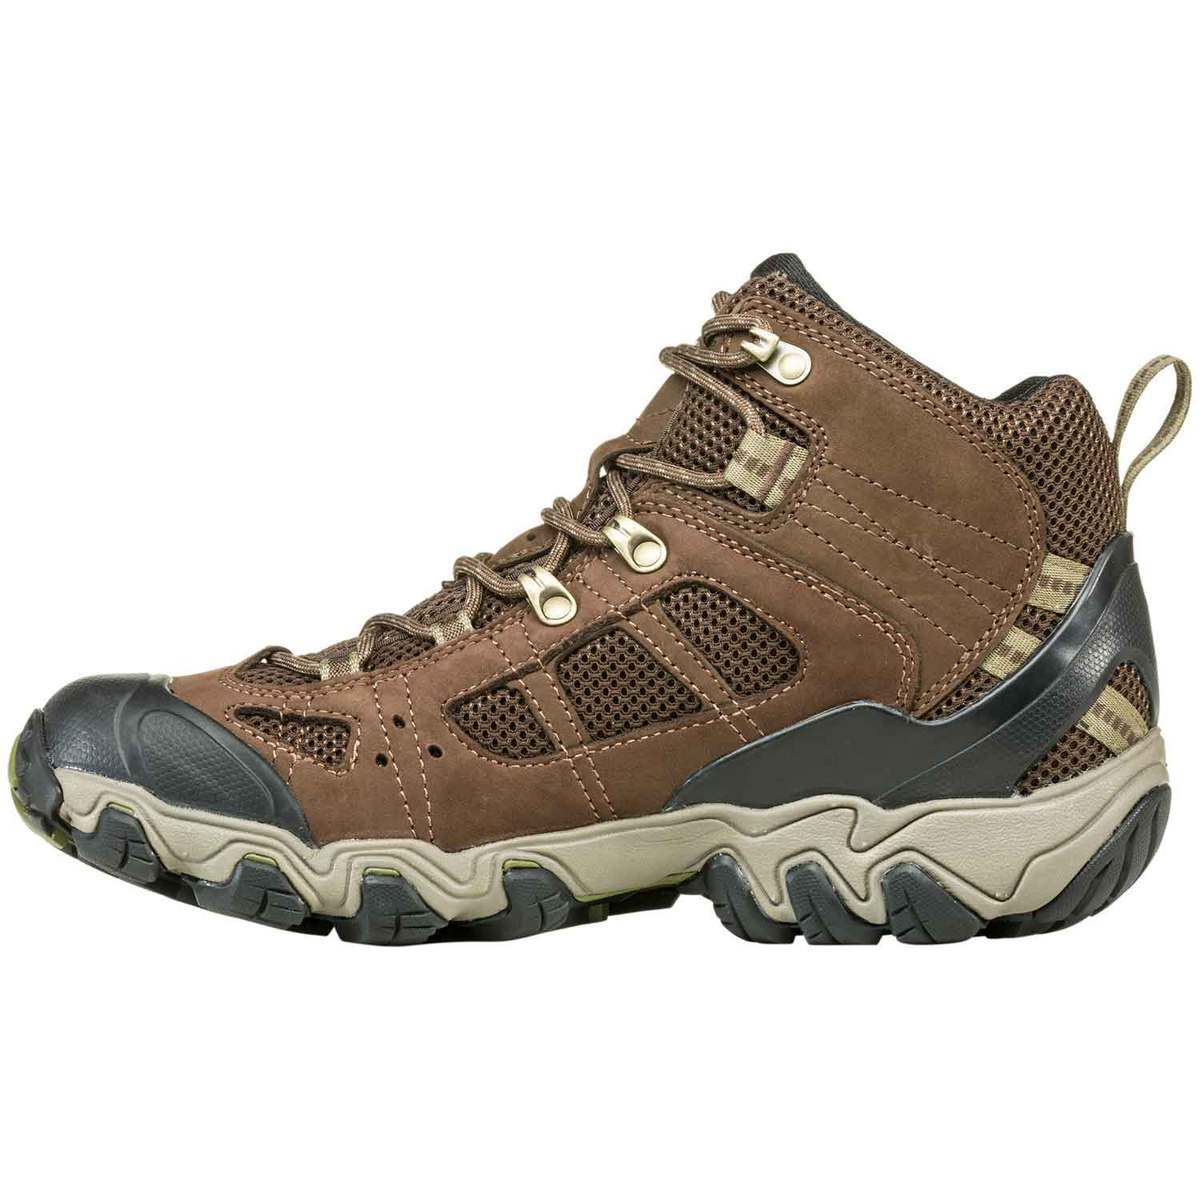 Oboz Men's Bridger Vent Waterproof Mid Hiking Boots - Brown - Size 10 ...